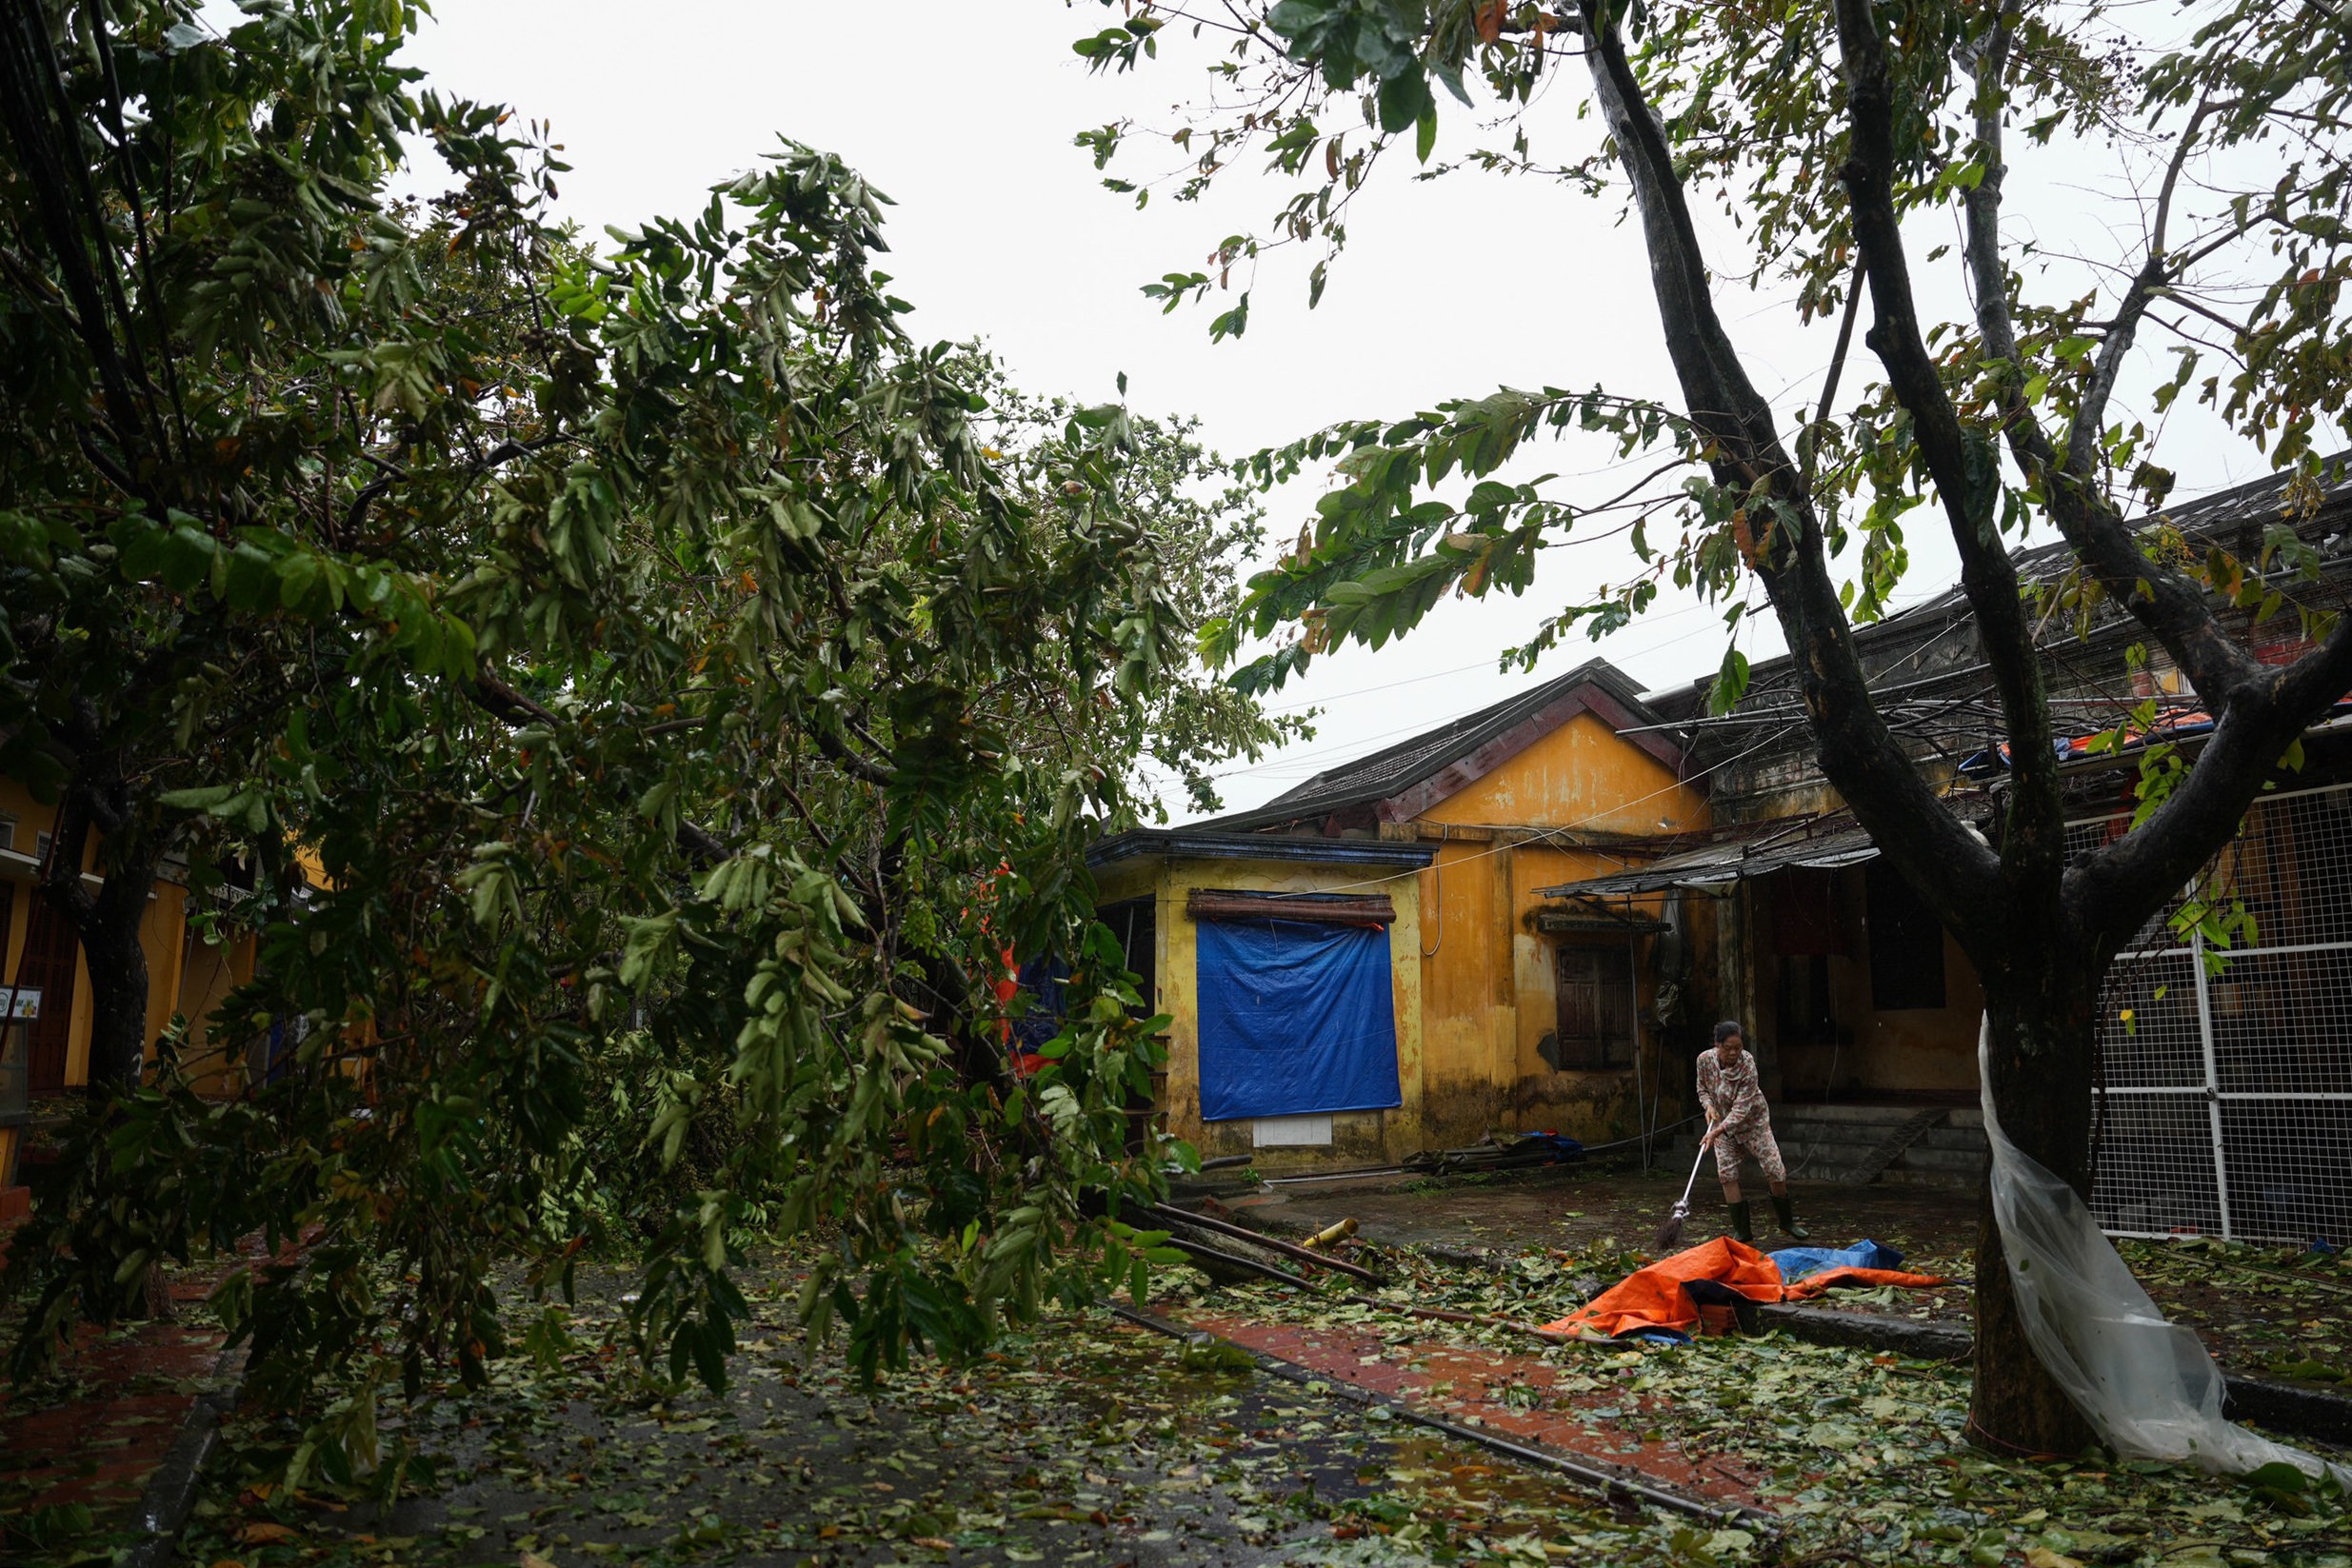 View - Người dân chung tay cùng dọn dẹp phố cổ Hội An, khắc phục hậu quả do bão | Báo Dân trí